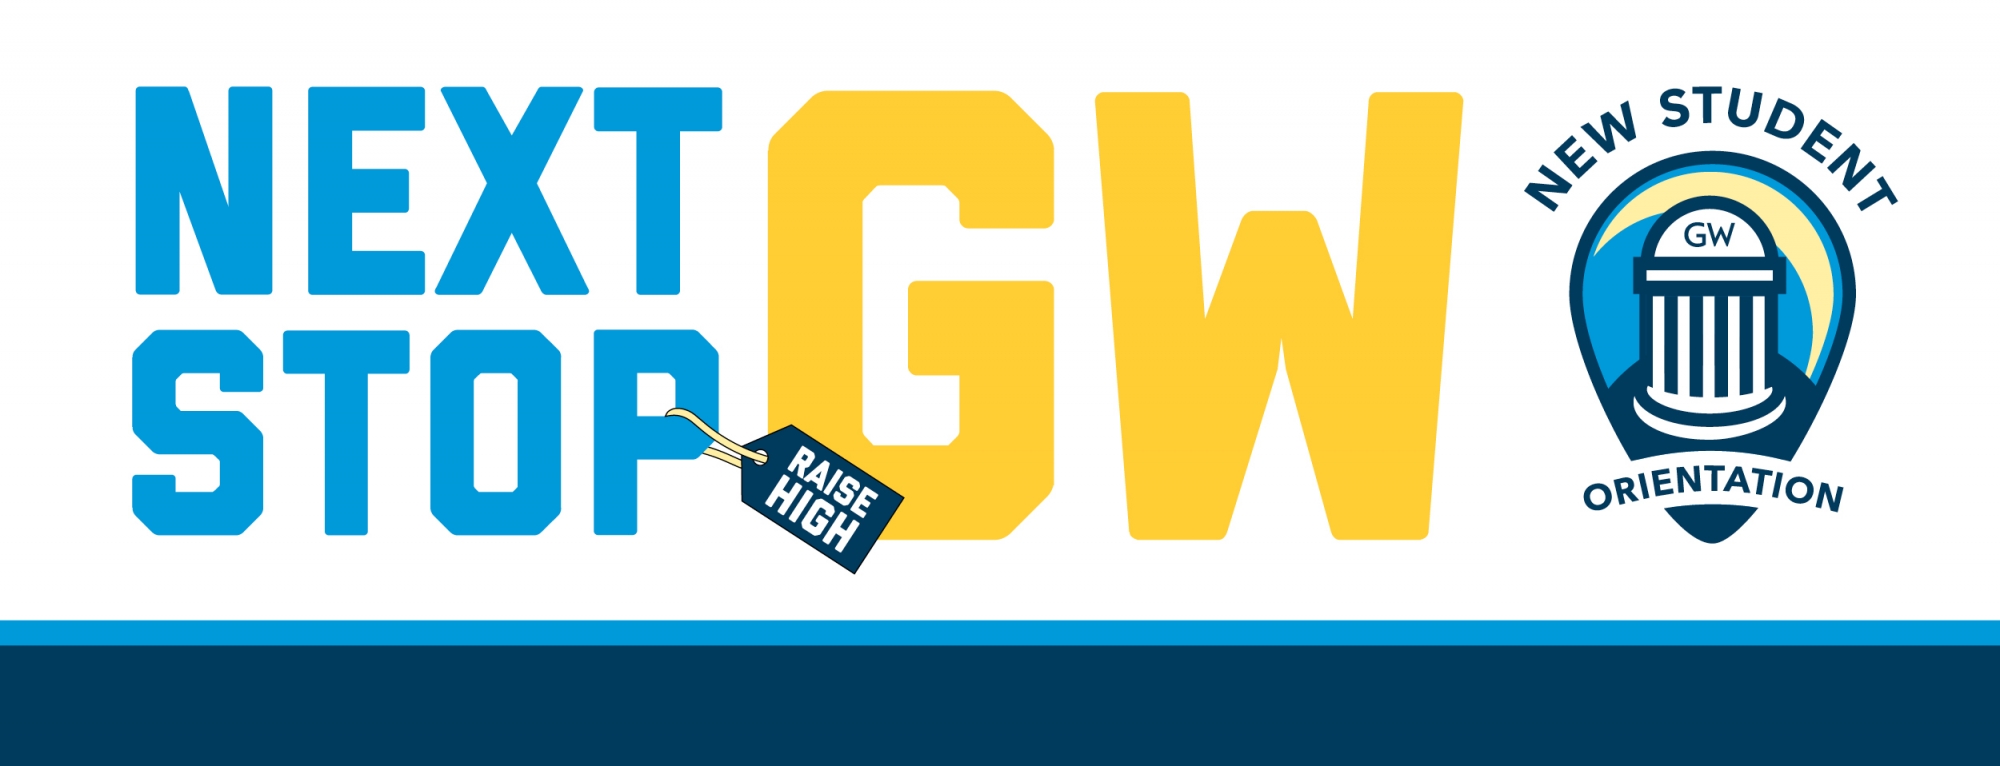 Next Stop, GW! Logo